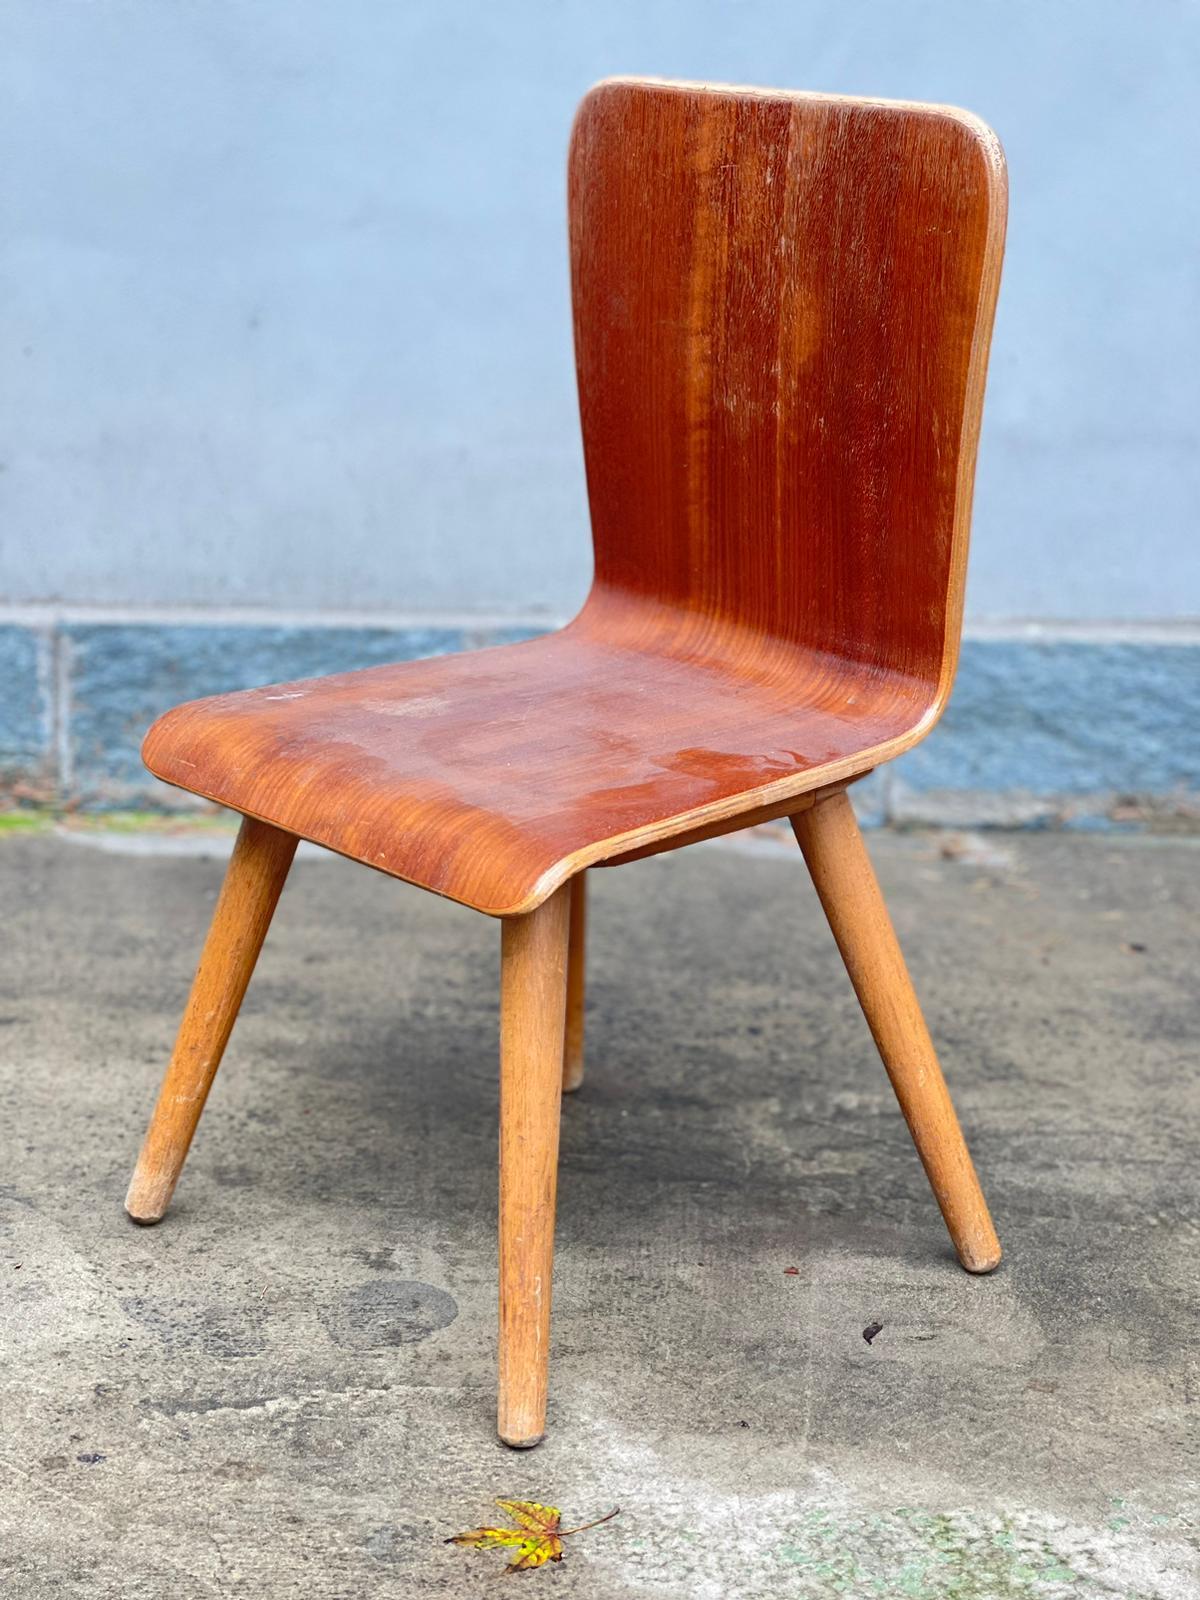 Sedia Miniatura design 1950s

Descrizione:
Sedia in miniatura legno curvato realizzata in Italia nella metà del XX Secolo
La Poltroncina è in ottime condizioni come da foto.

Materiale:
Legno Curvato

Periodo di